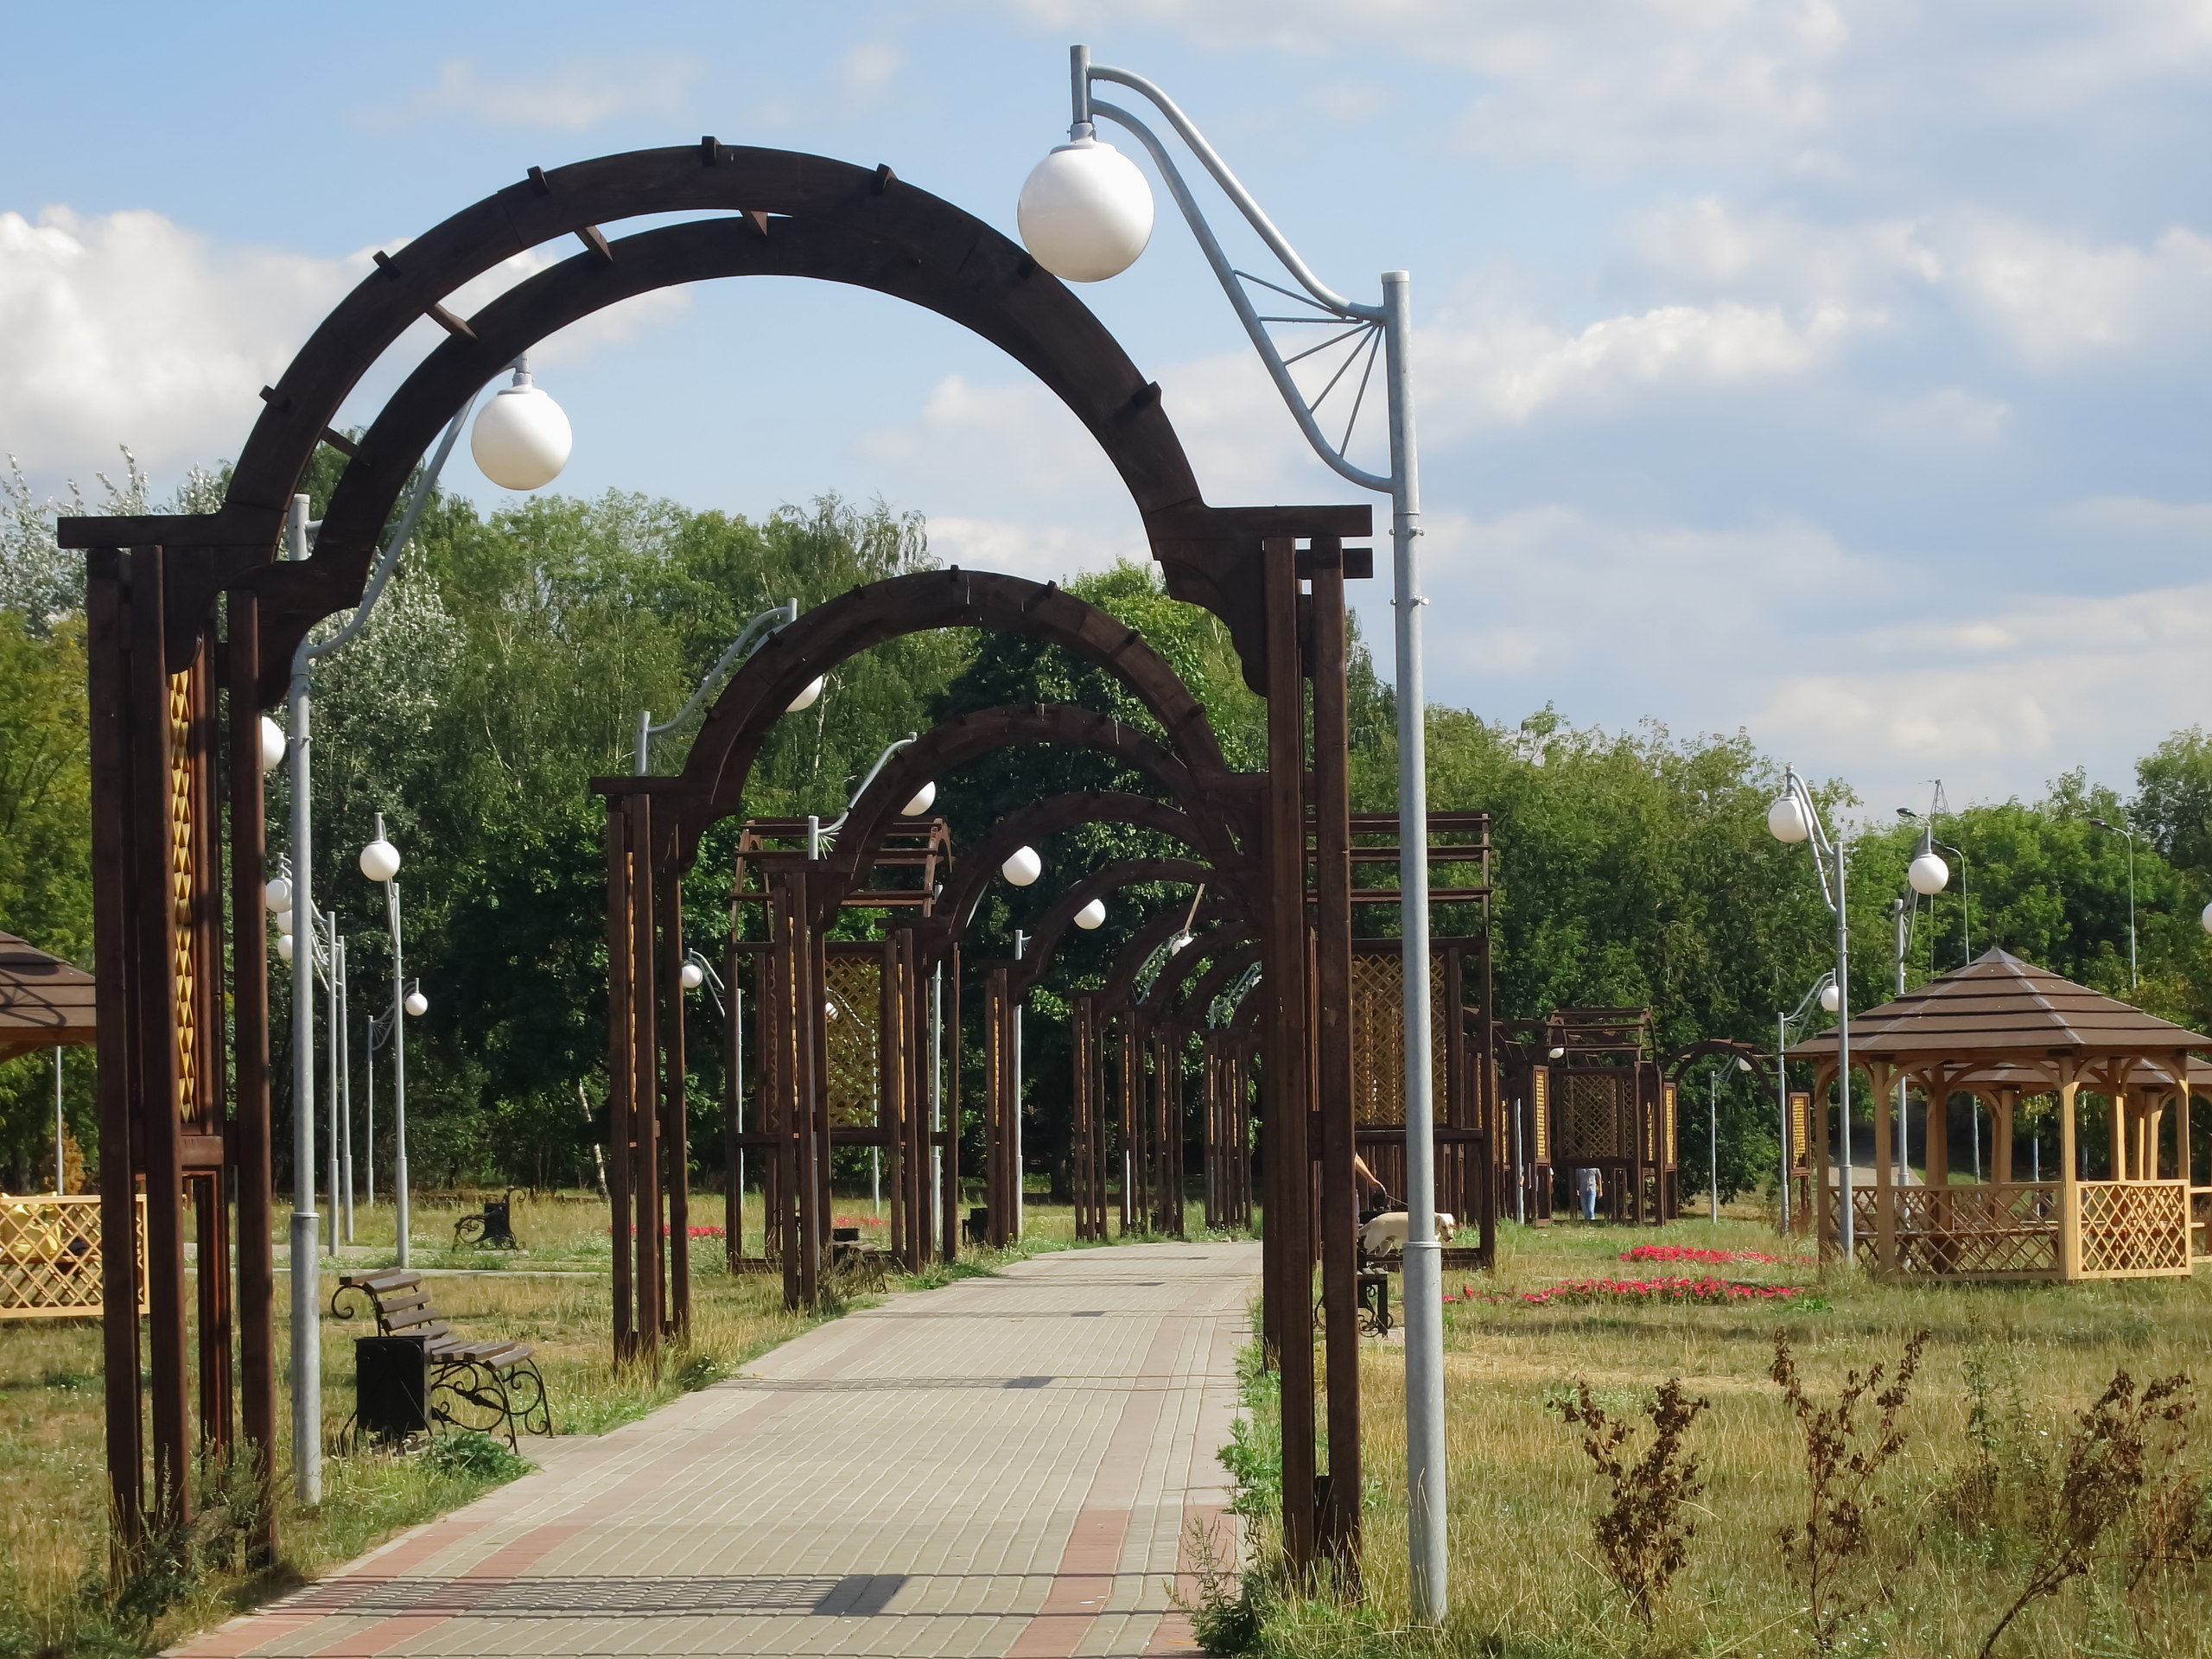 Люблинский парк москва